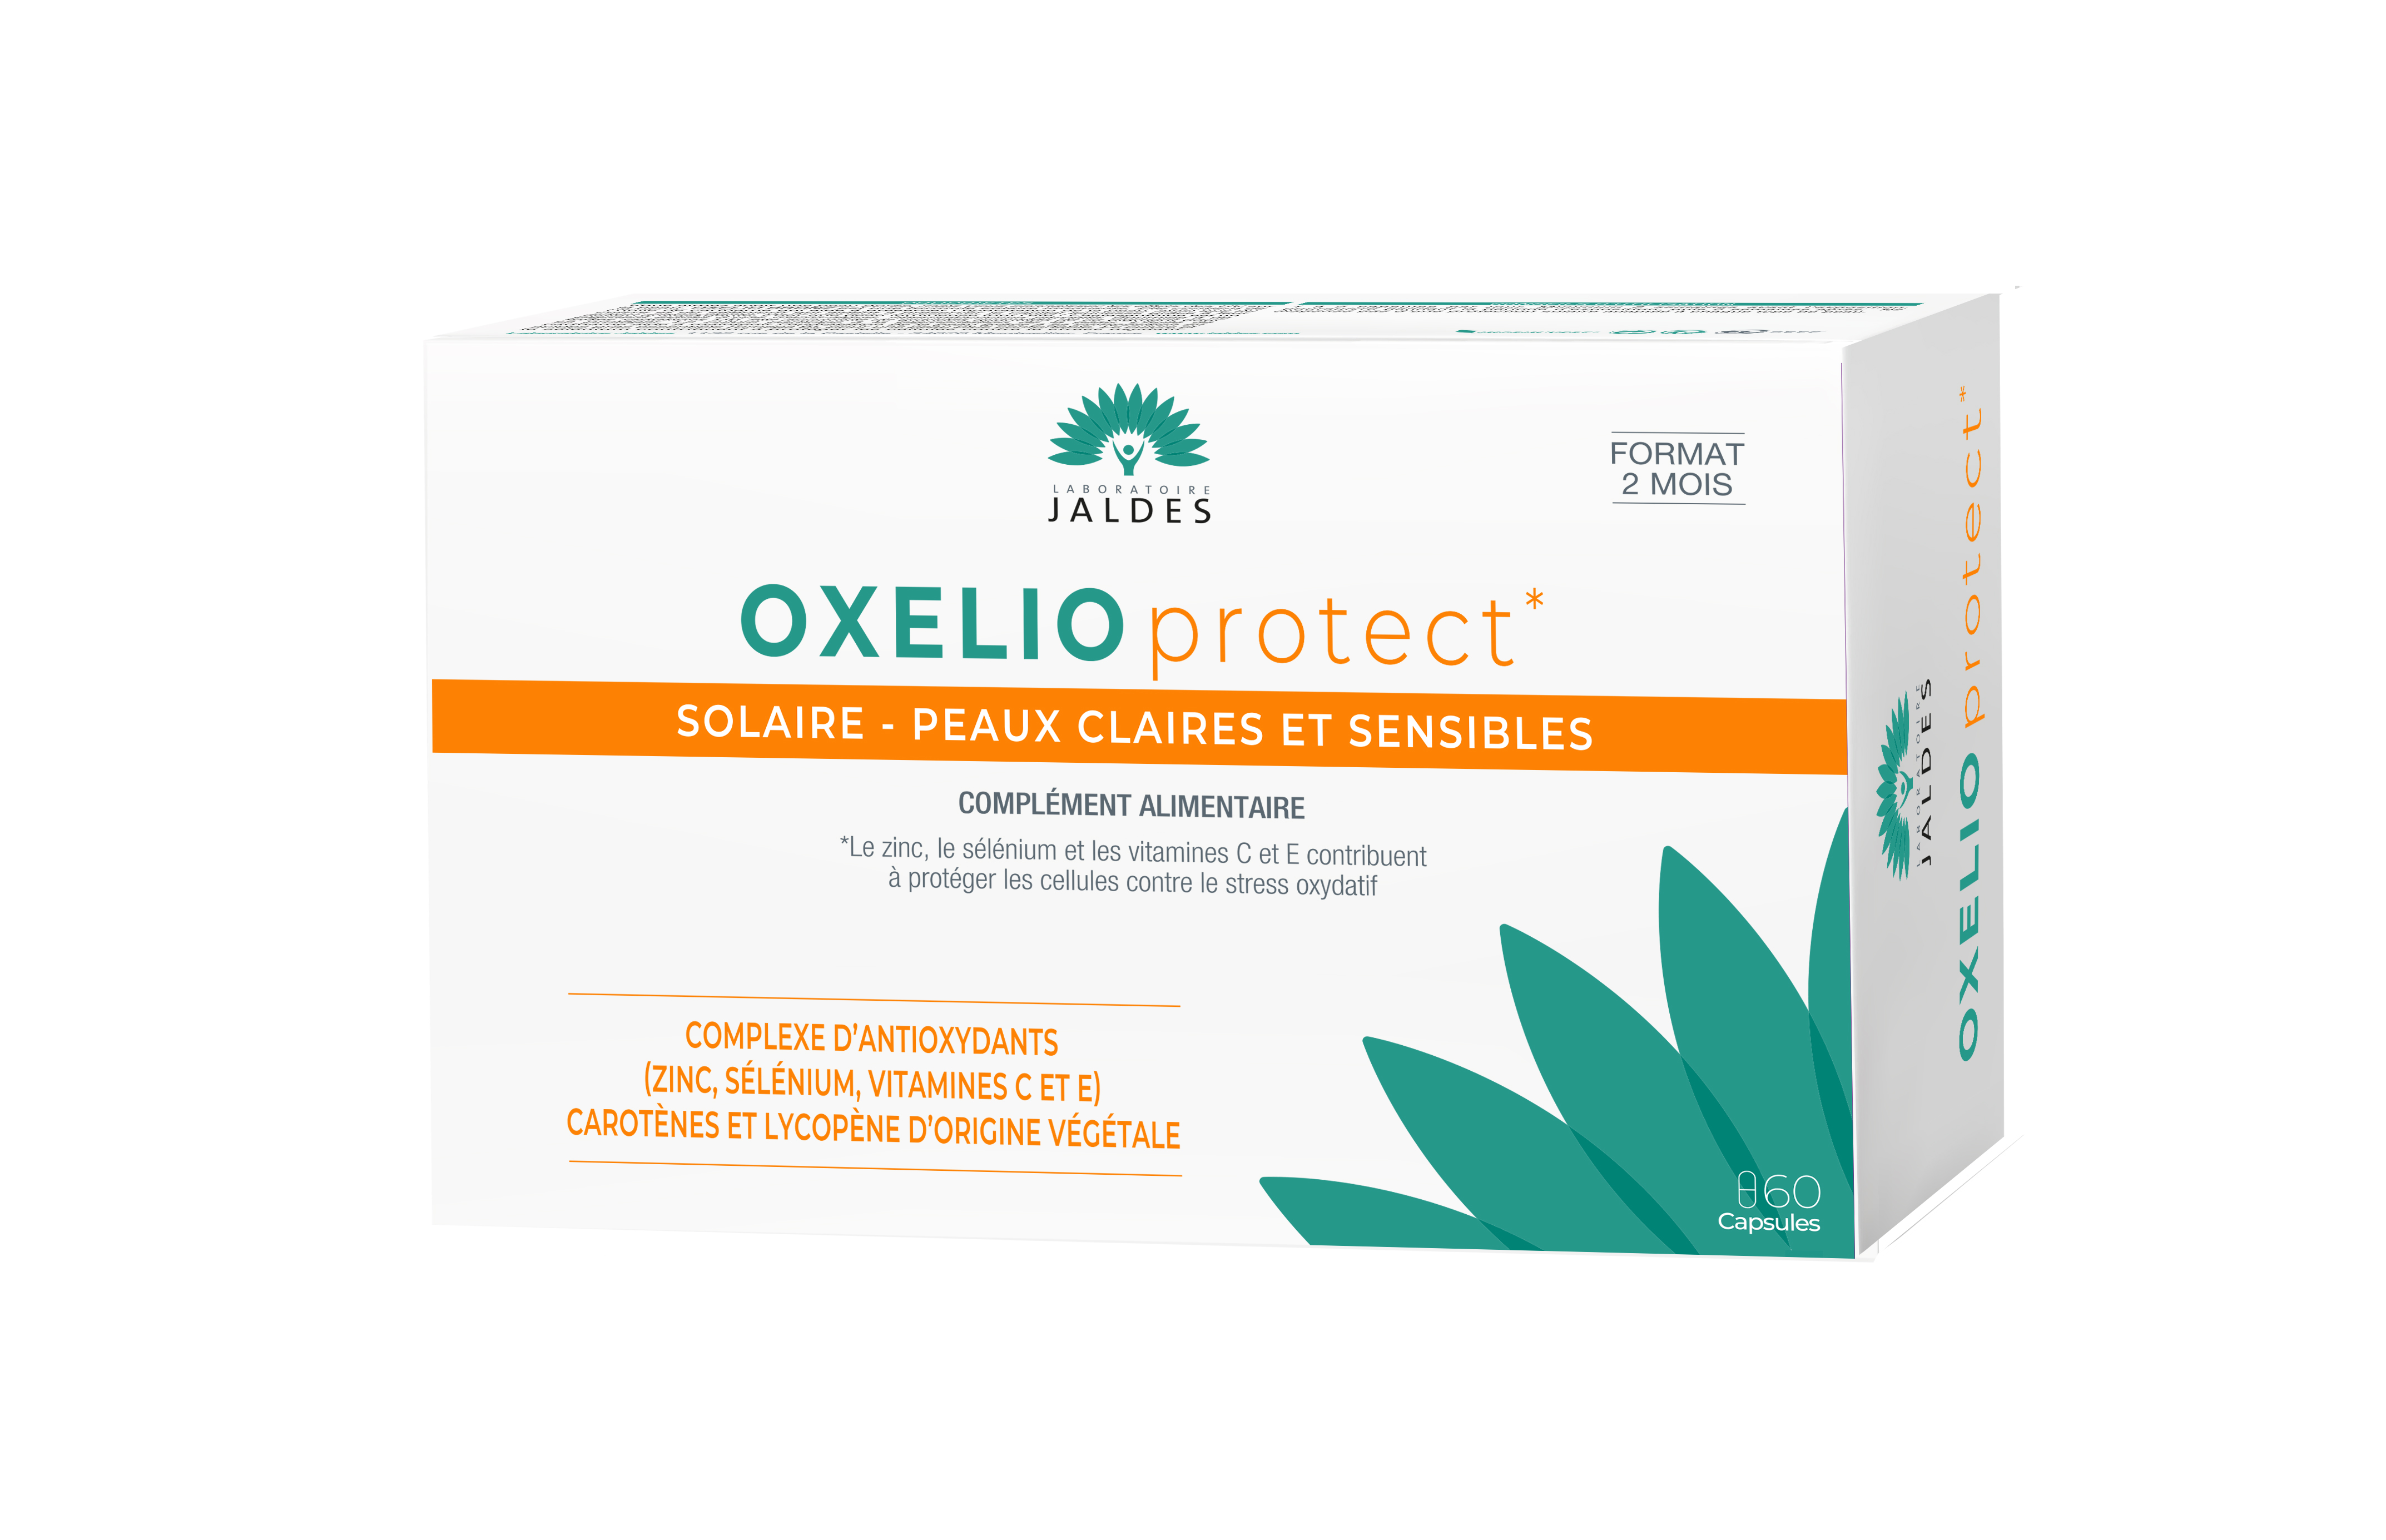 Oxelioprotect solaire peaux claires et sensibles Jaldes - boite de 60 capsules